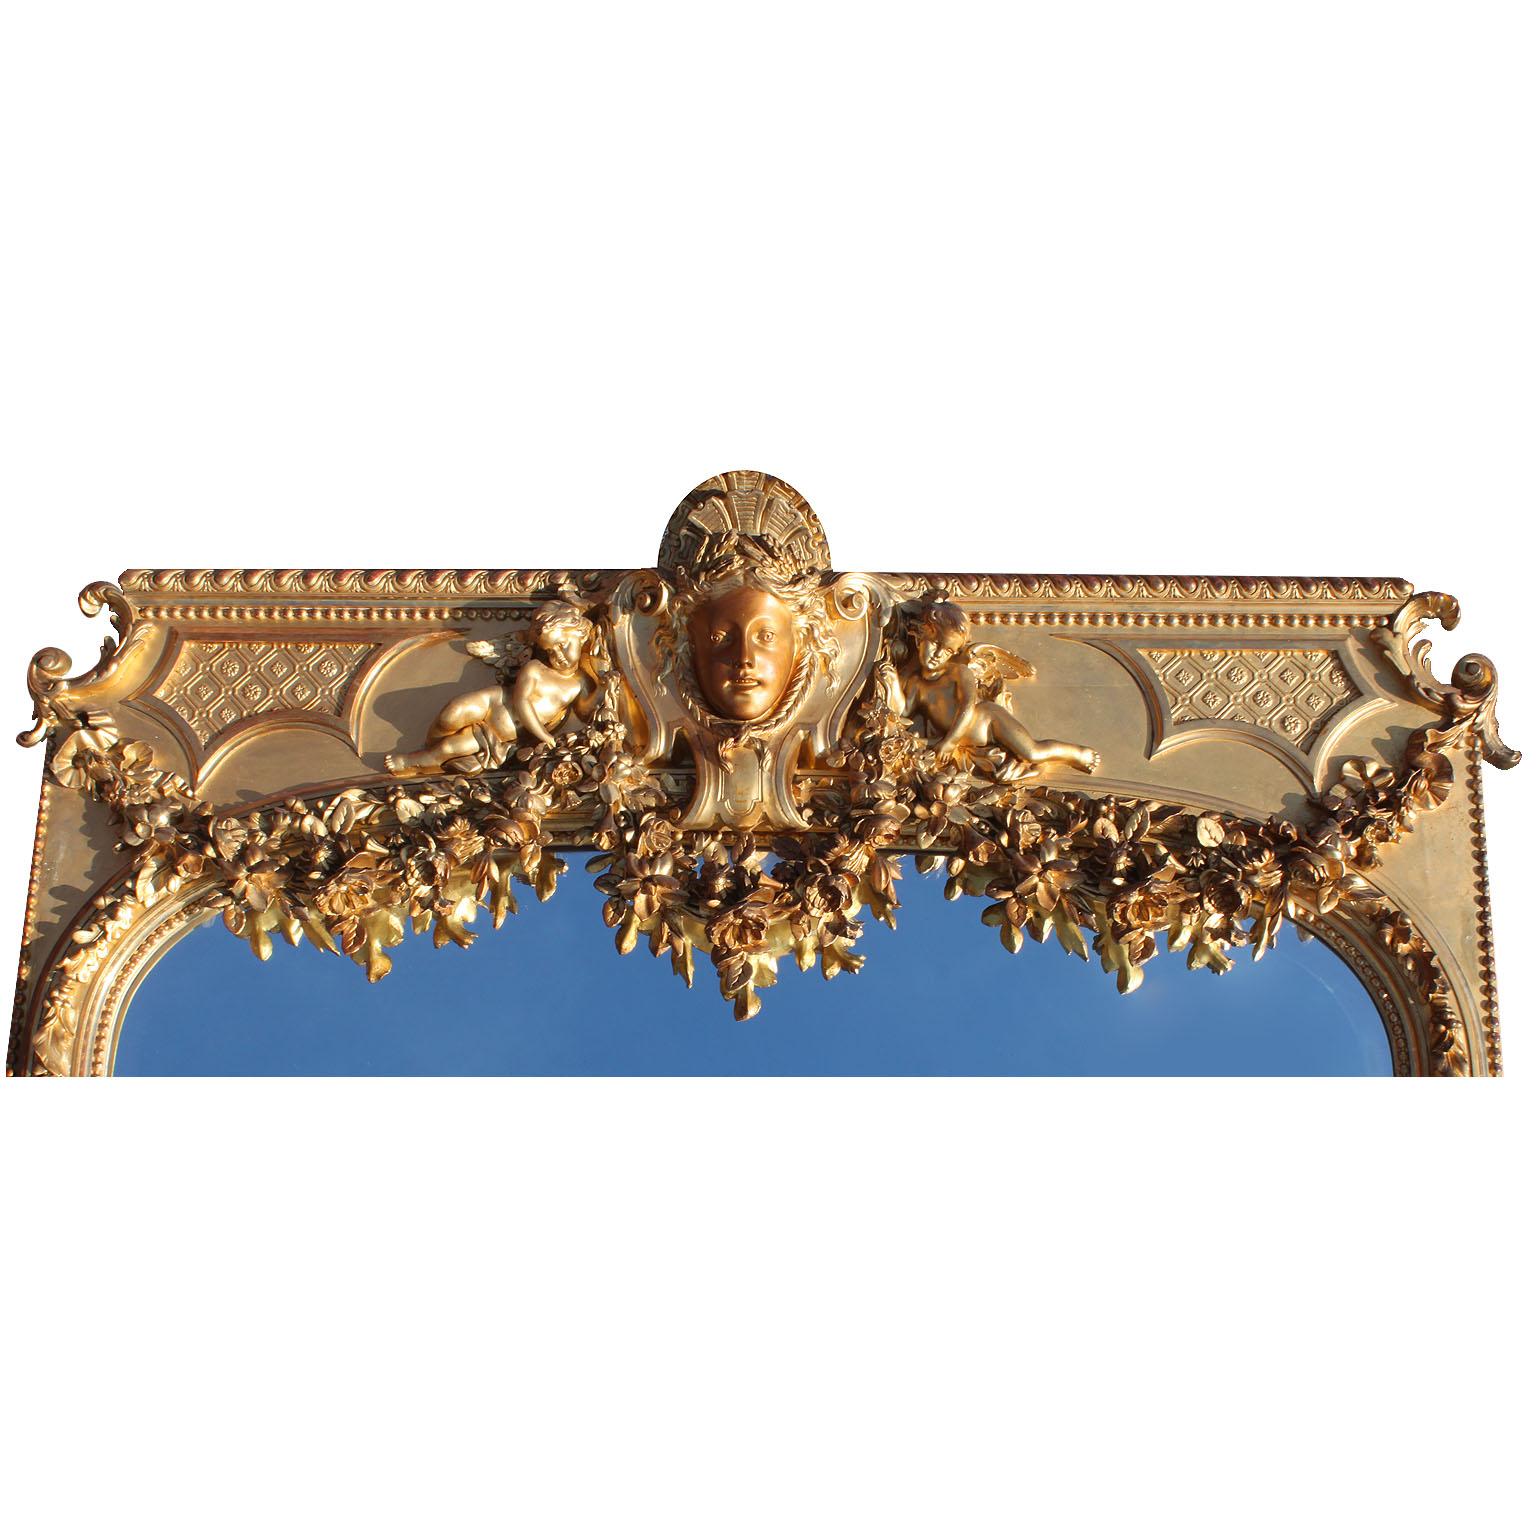 Eine sehr feine und palastartigen Französisch 19. Jahrhundert Stil Louis XV geschnitzt Goldholz und Gesso figuralen abgeschrägten Spiegelrahmen trumeau. Die gewölbte Platte in einem Haupt-Blatt und Eichel trailing Grenze, durch Band gebunden